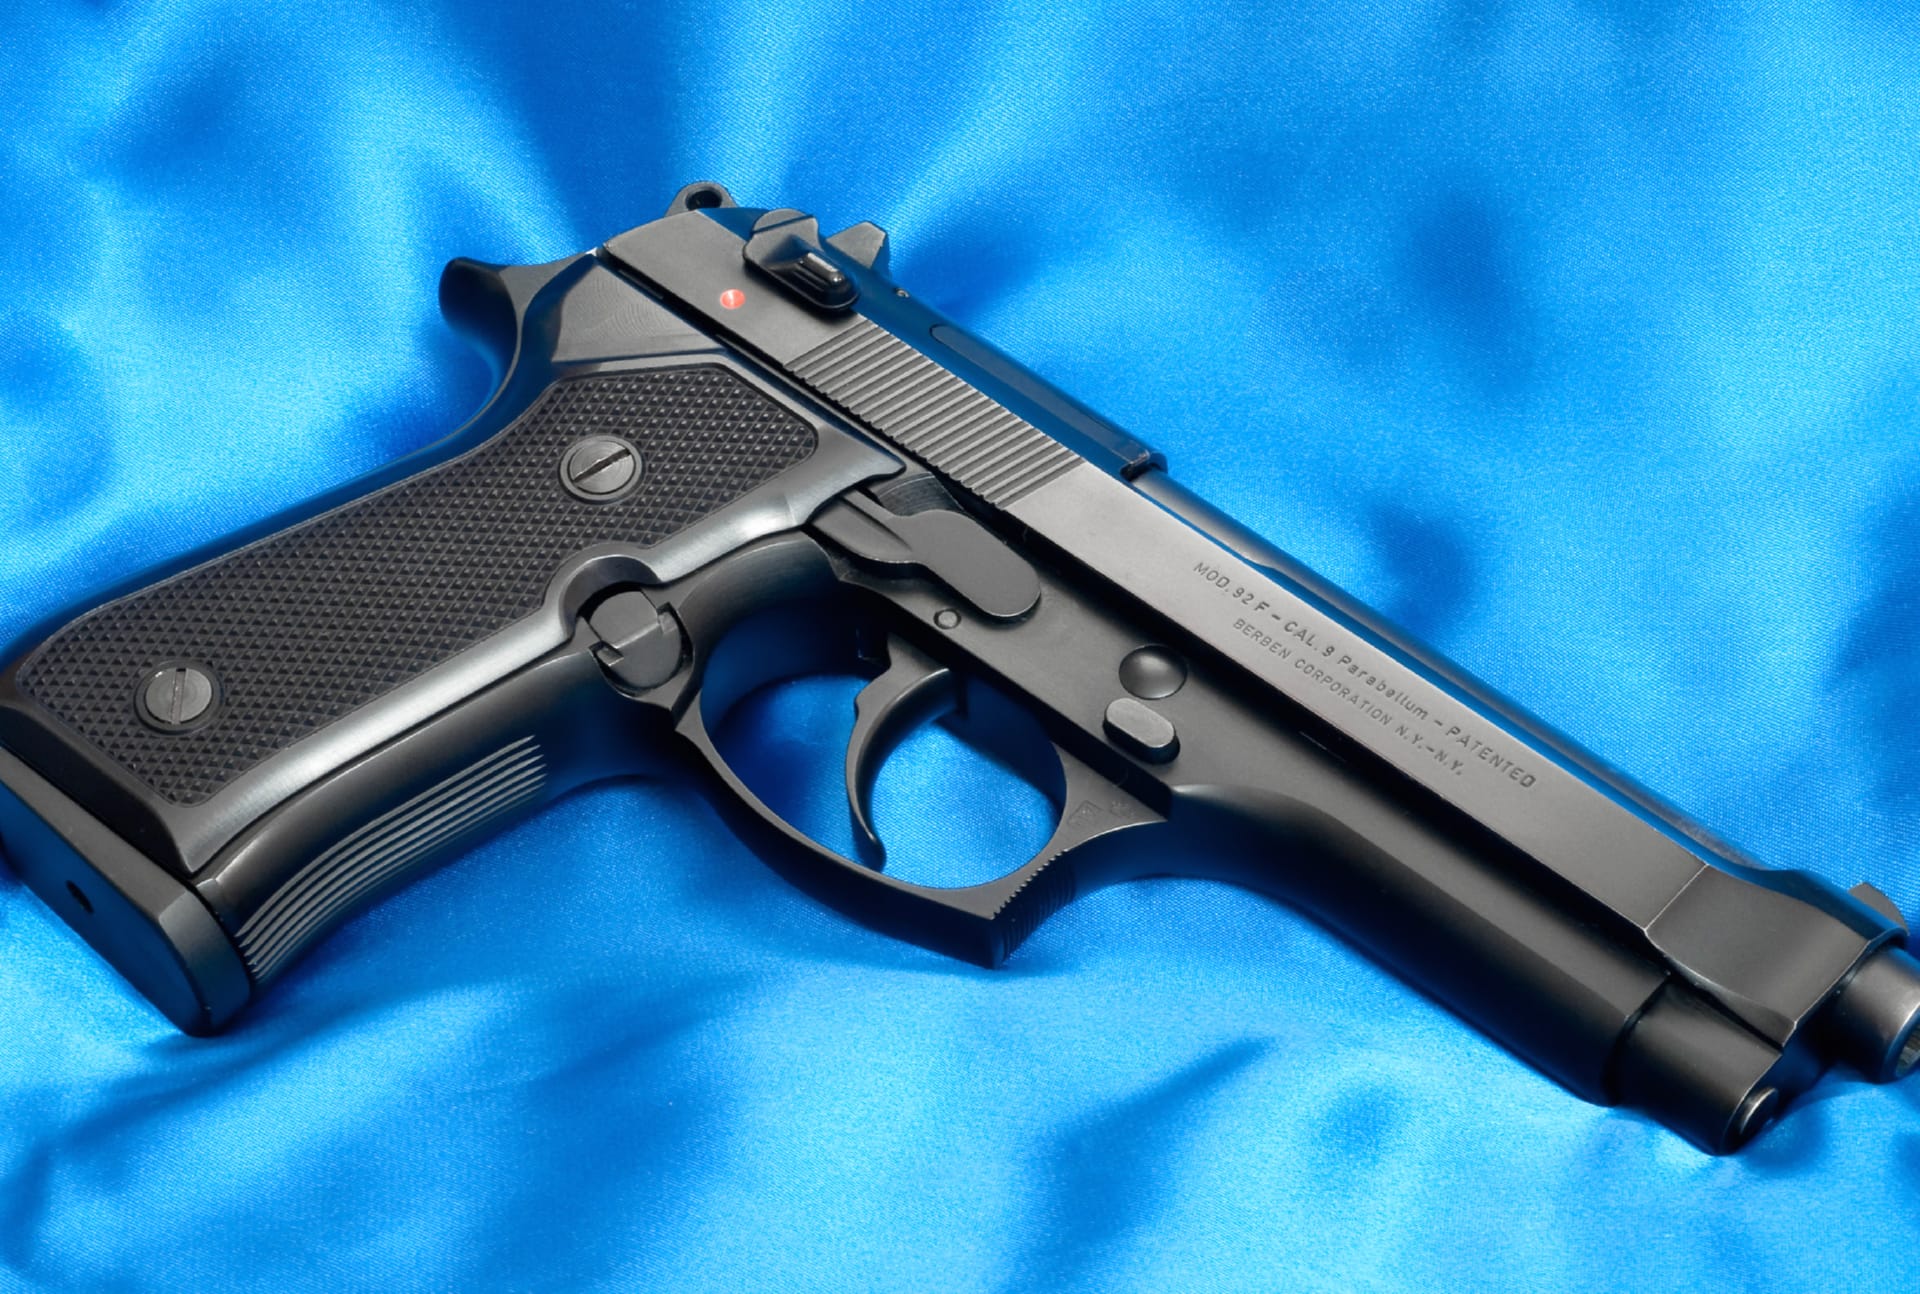 Beretta 92F Pistol at 1280 x 960 size wallpapers HD quality